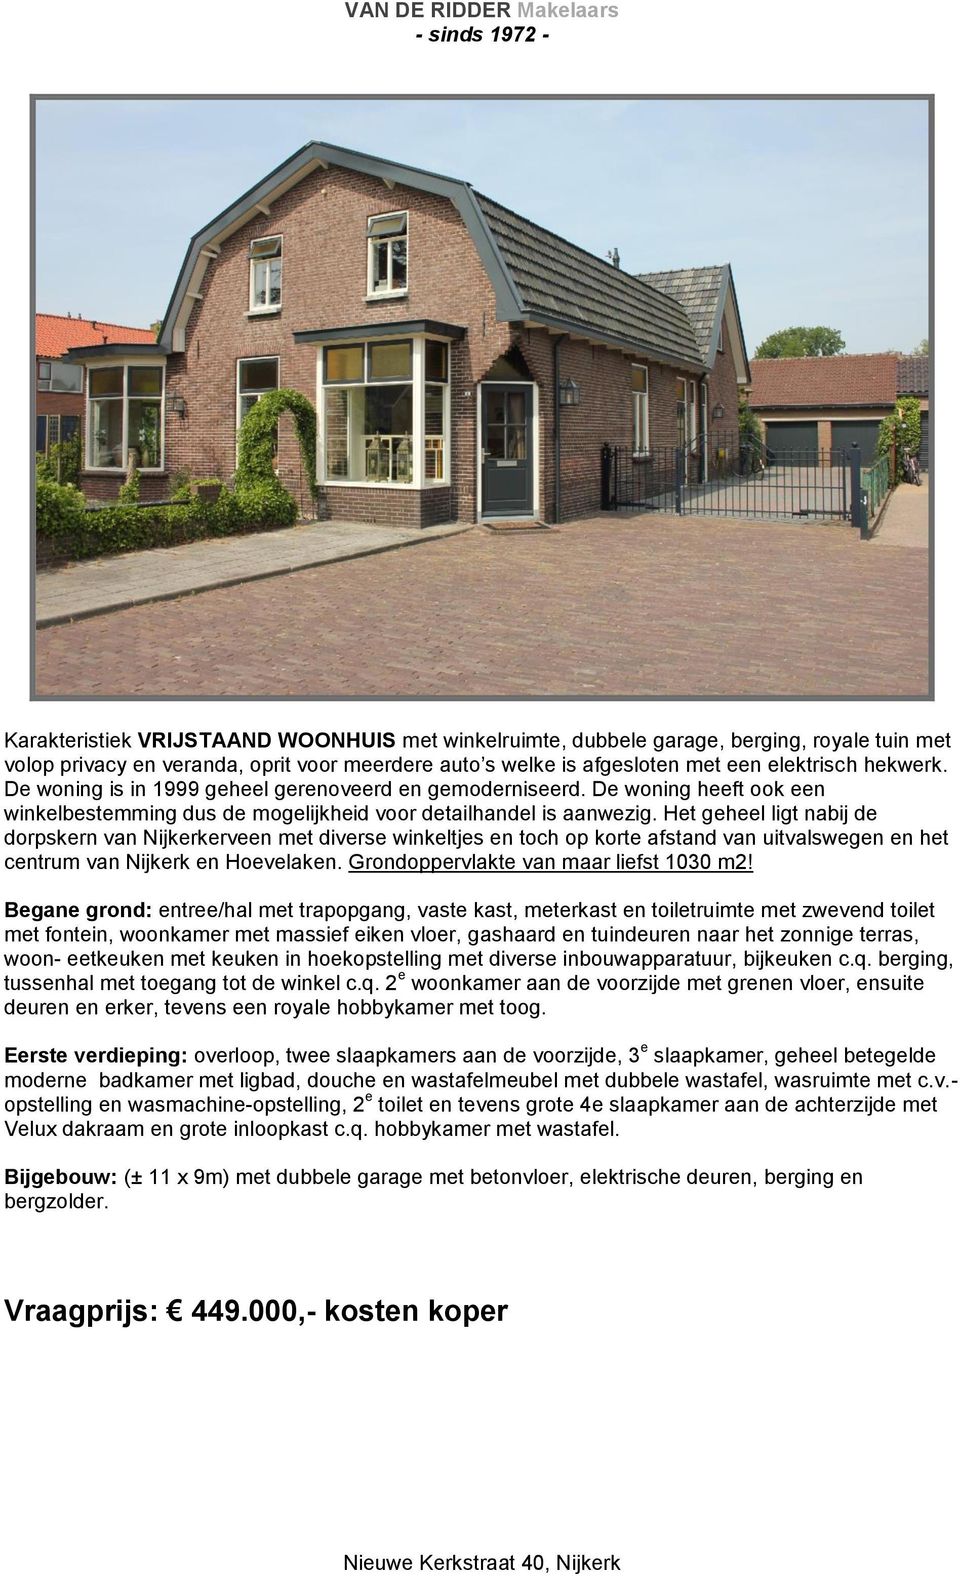 Het geheel ligt nabij de dorpskern van Nijkerkerveen met diverse winkeltjes en toch op korte afstand van uitvalswegen en het centrum van Nijkerk en Hoevelaken.